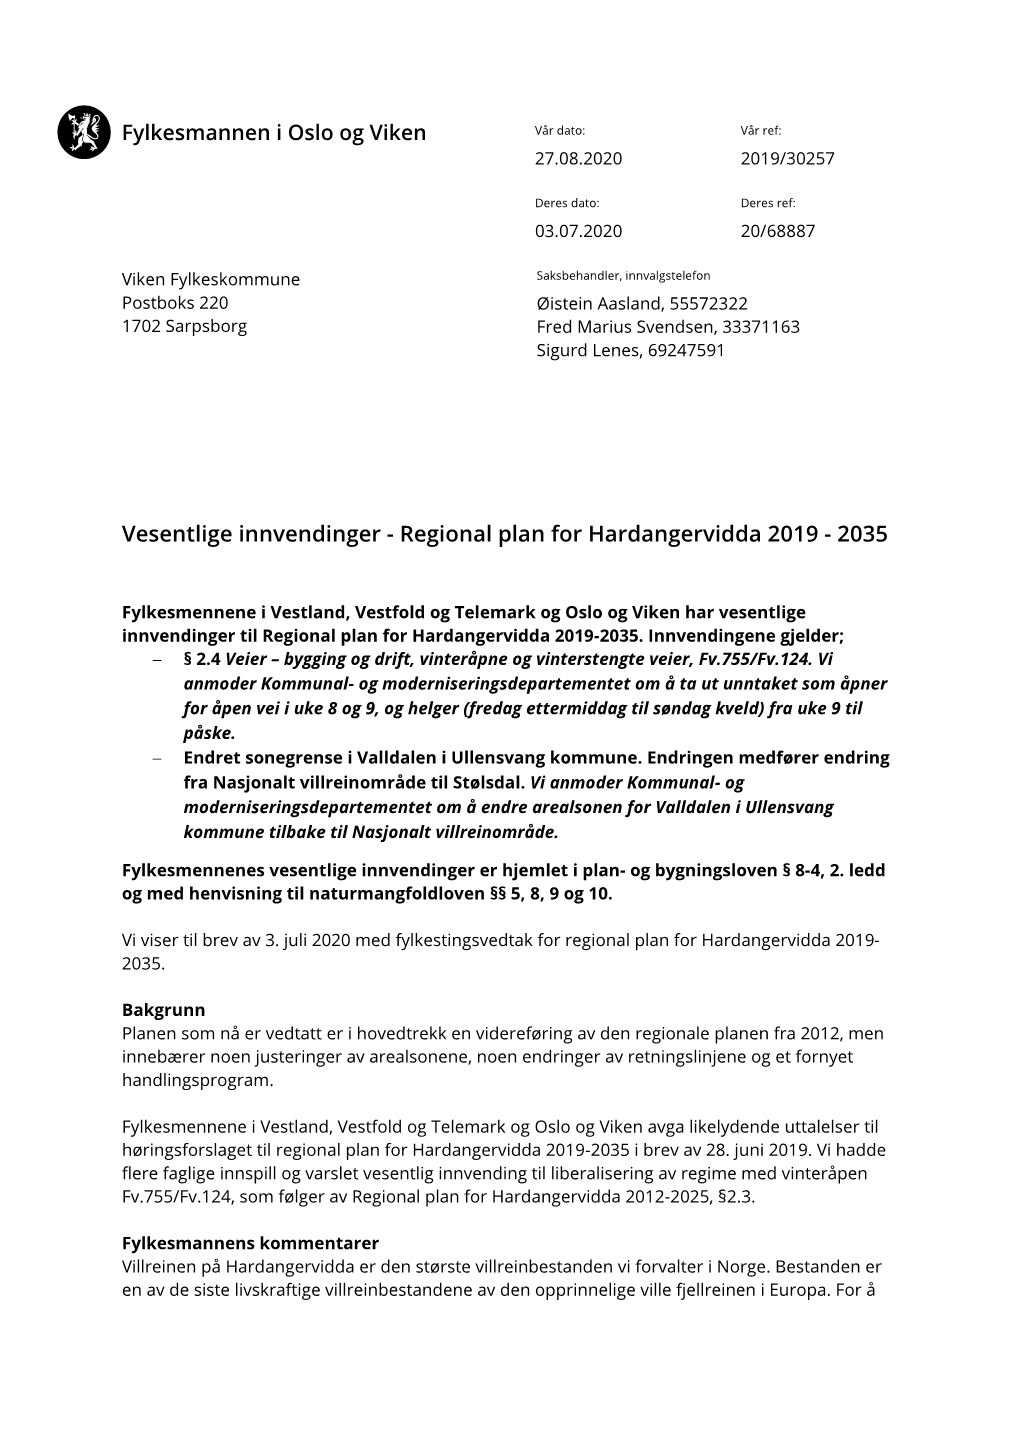 Vesentlige Innvendinger - Regional Plan for Hardangervidda 2019 - 2035